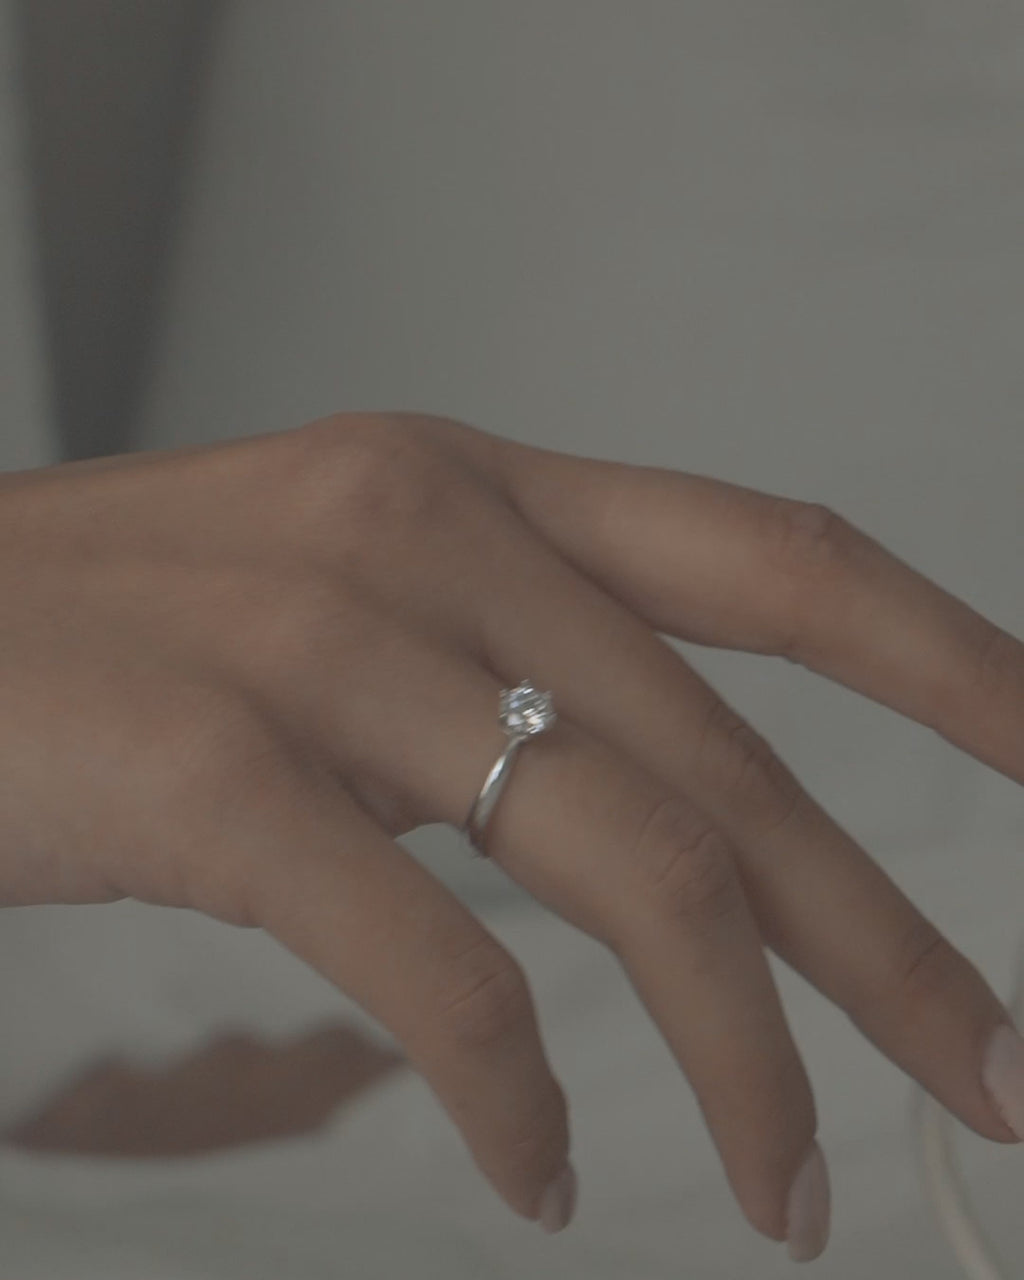 Λευκόχρυσο μονόπετρο δαχτυλίδι με διαμάντι και εξάδοντο καστόνι φορεμένο.